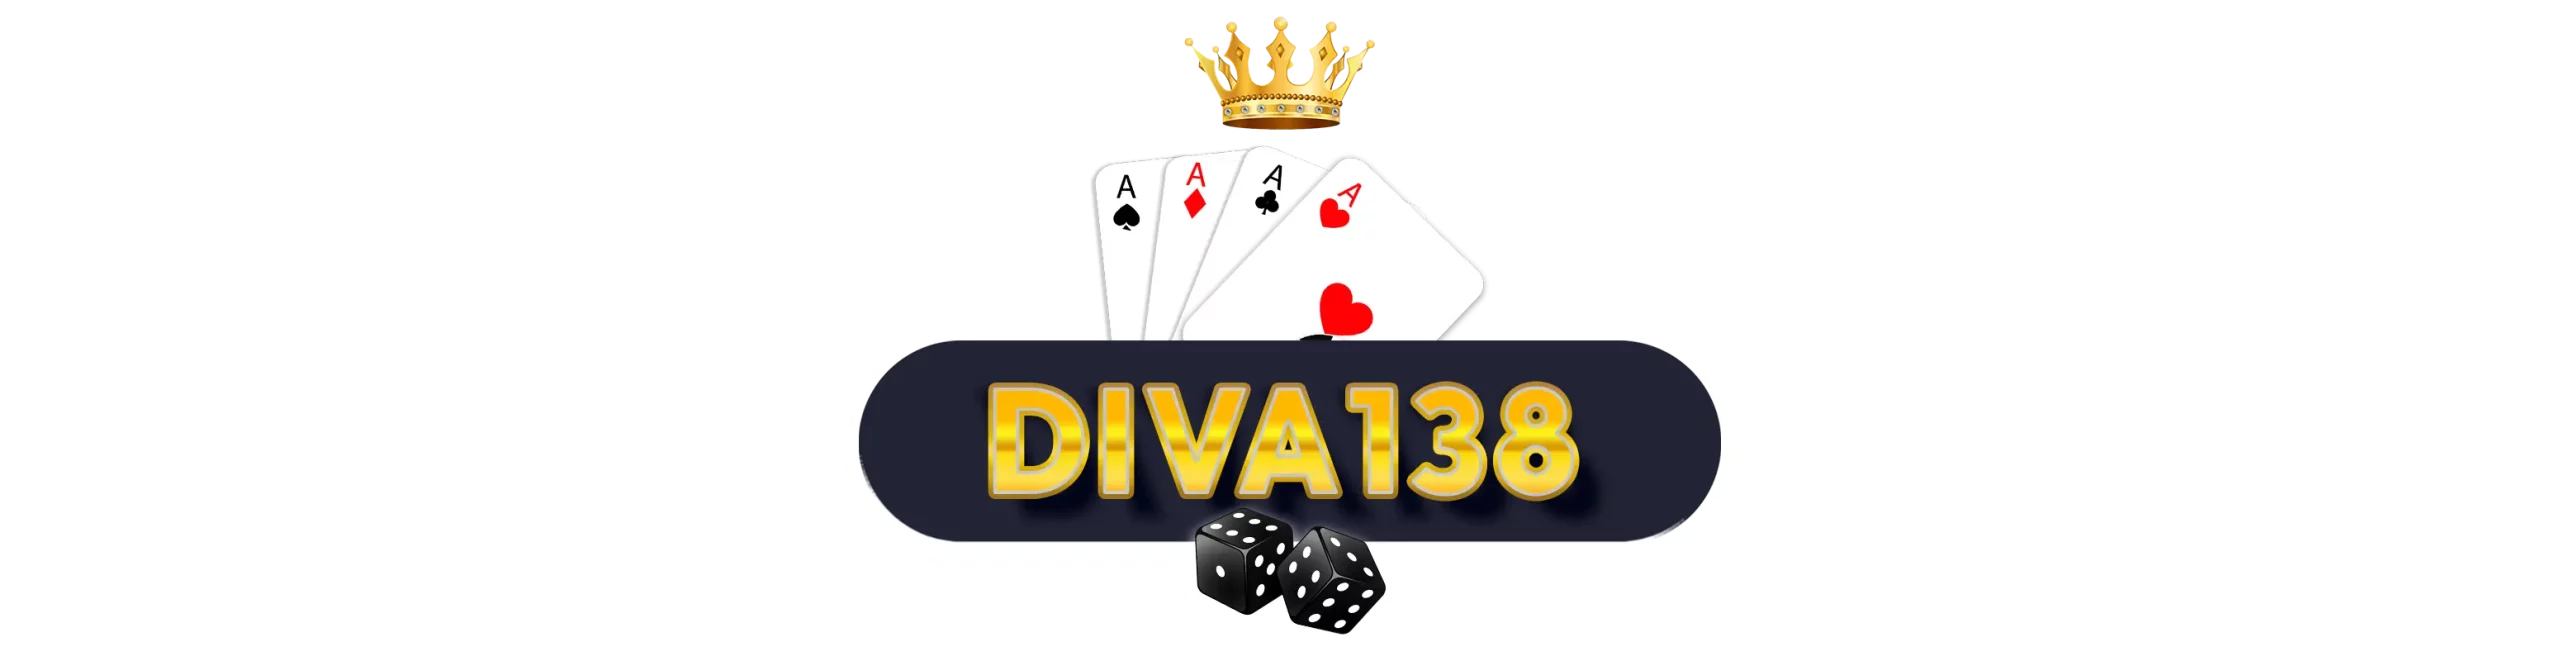 diva138